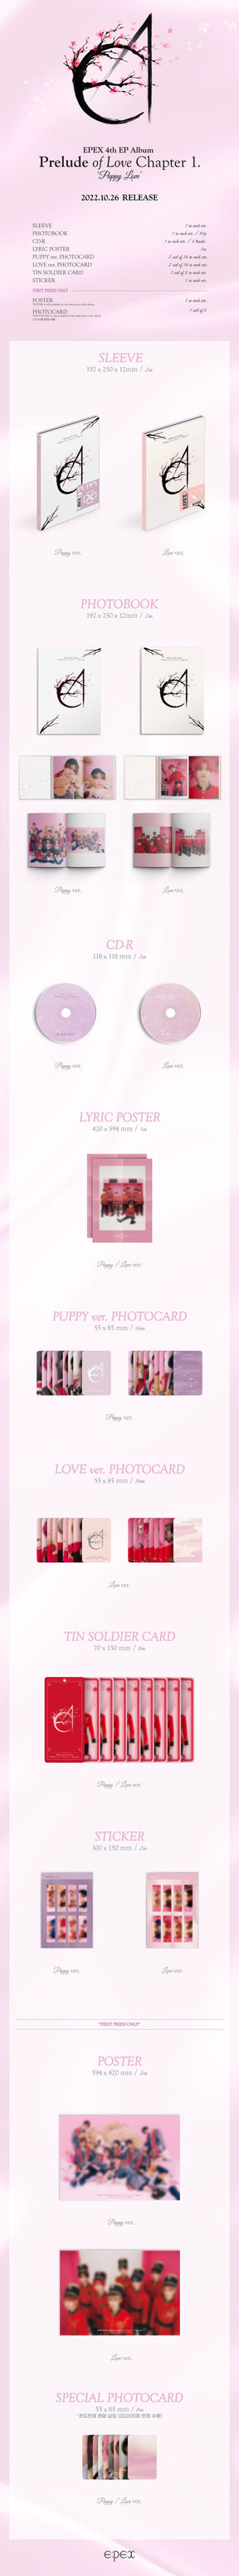 EPEX Mini Album Vol. 4 - Prelude of Love Chapter 1. Puppy Love (Random Version)